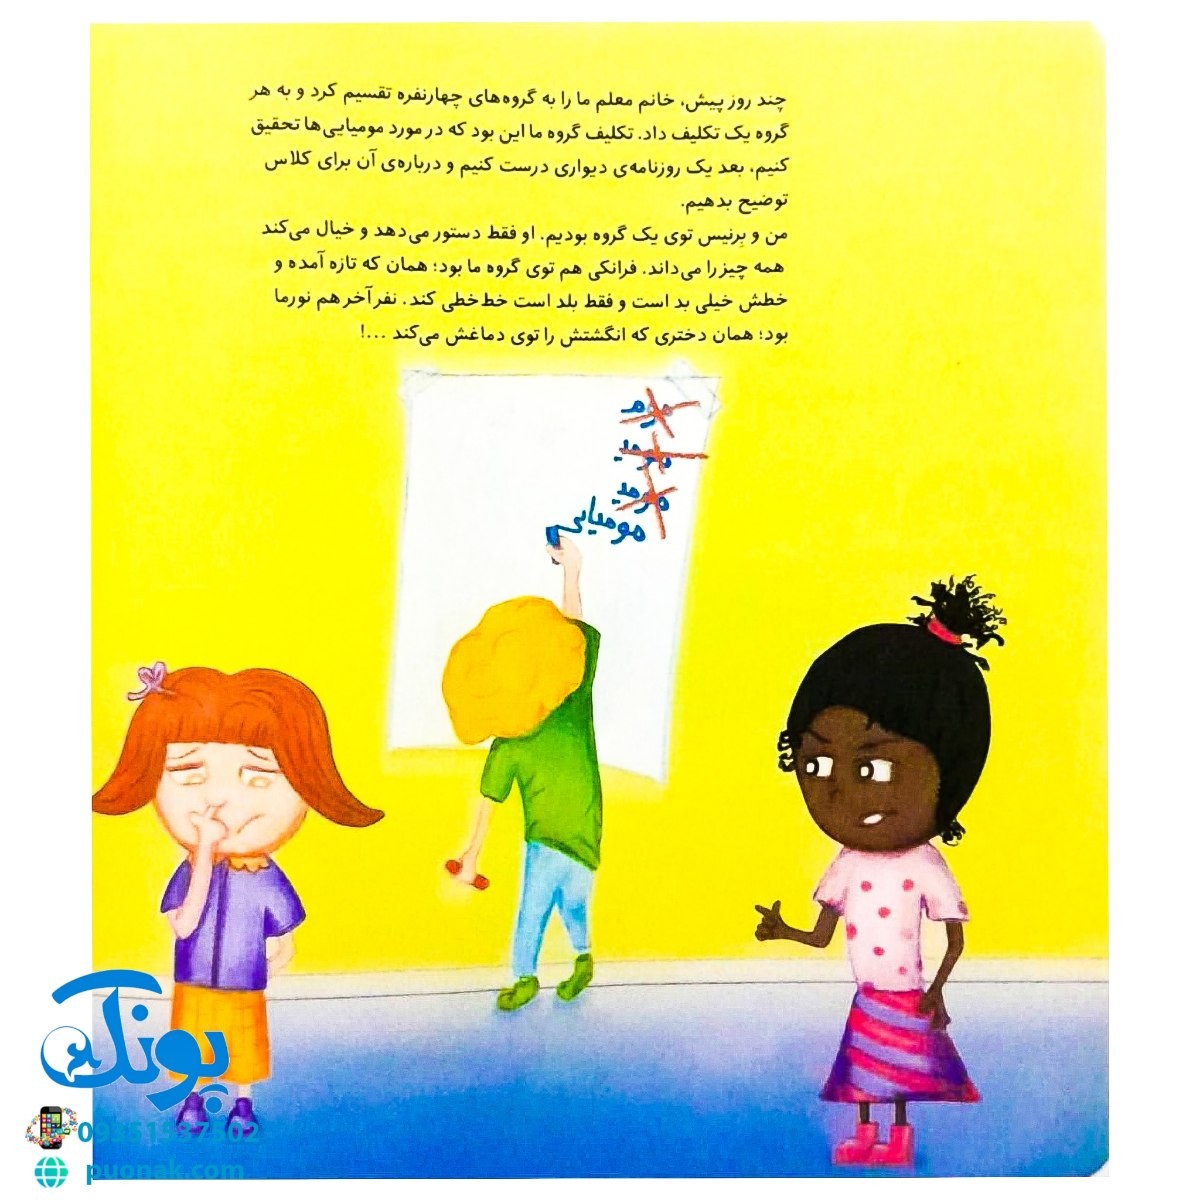 کتاب های جولیا / کار گروهی (آموزش و یادگیری کار گروهی با دوستان برای کودکان)